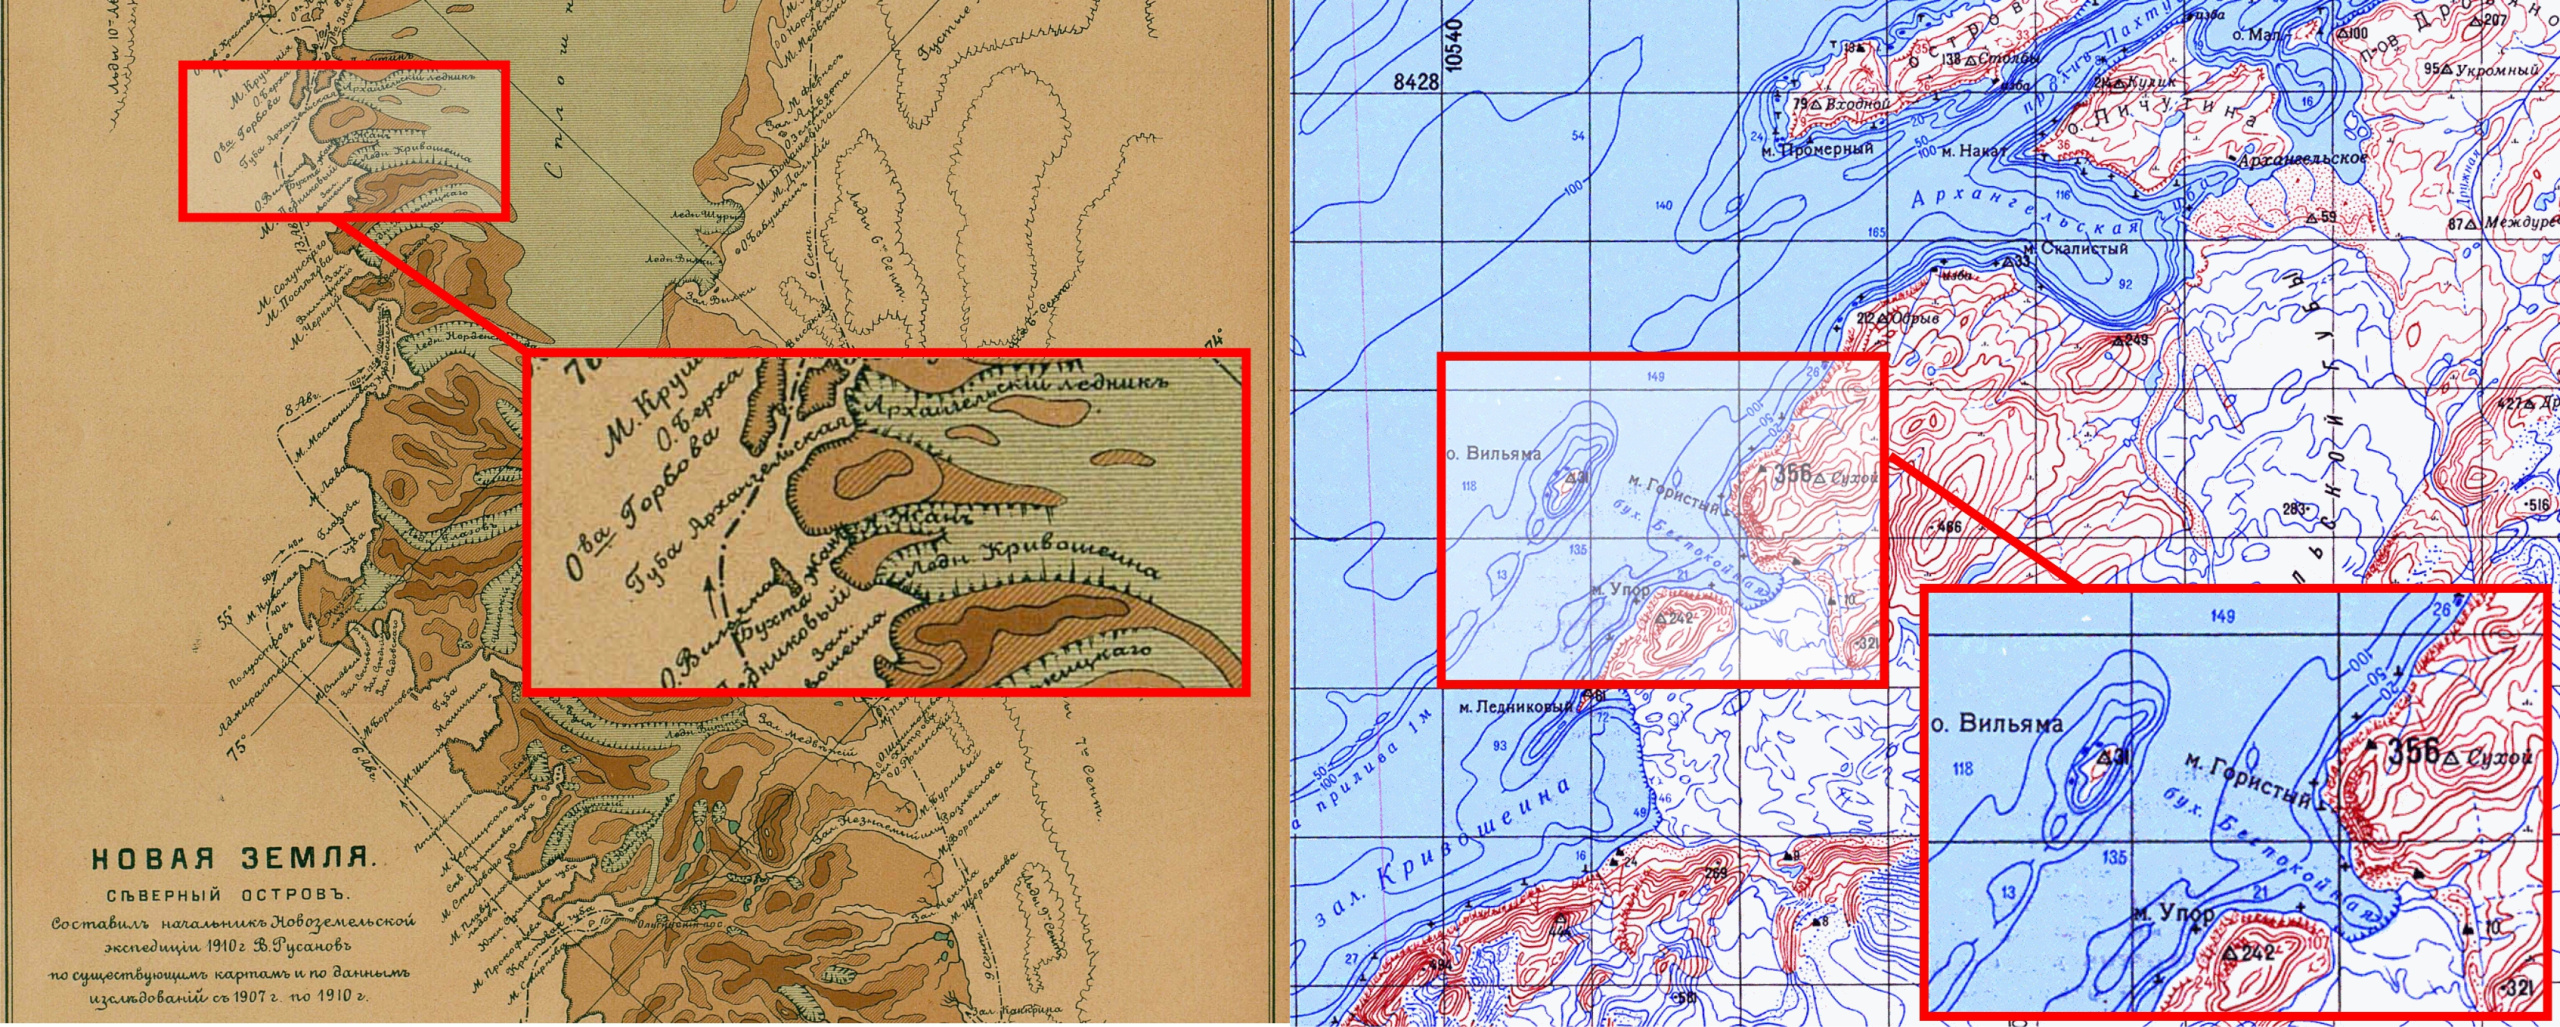 Положение бухты Жан на карте В. Русанова 1910 года и бухты Беспокойная на современной карте